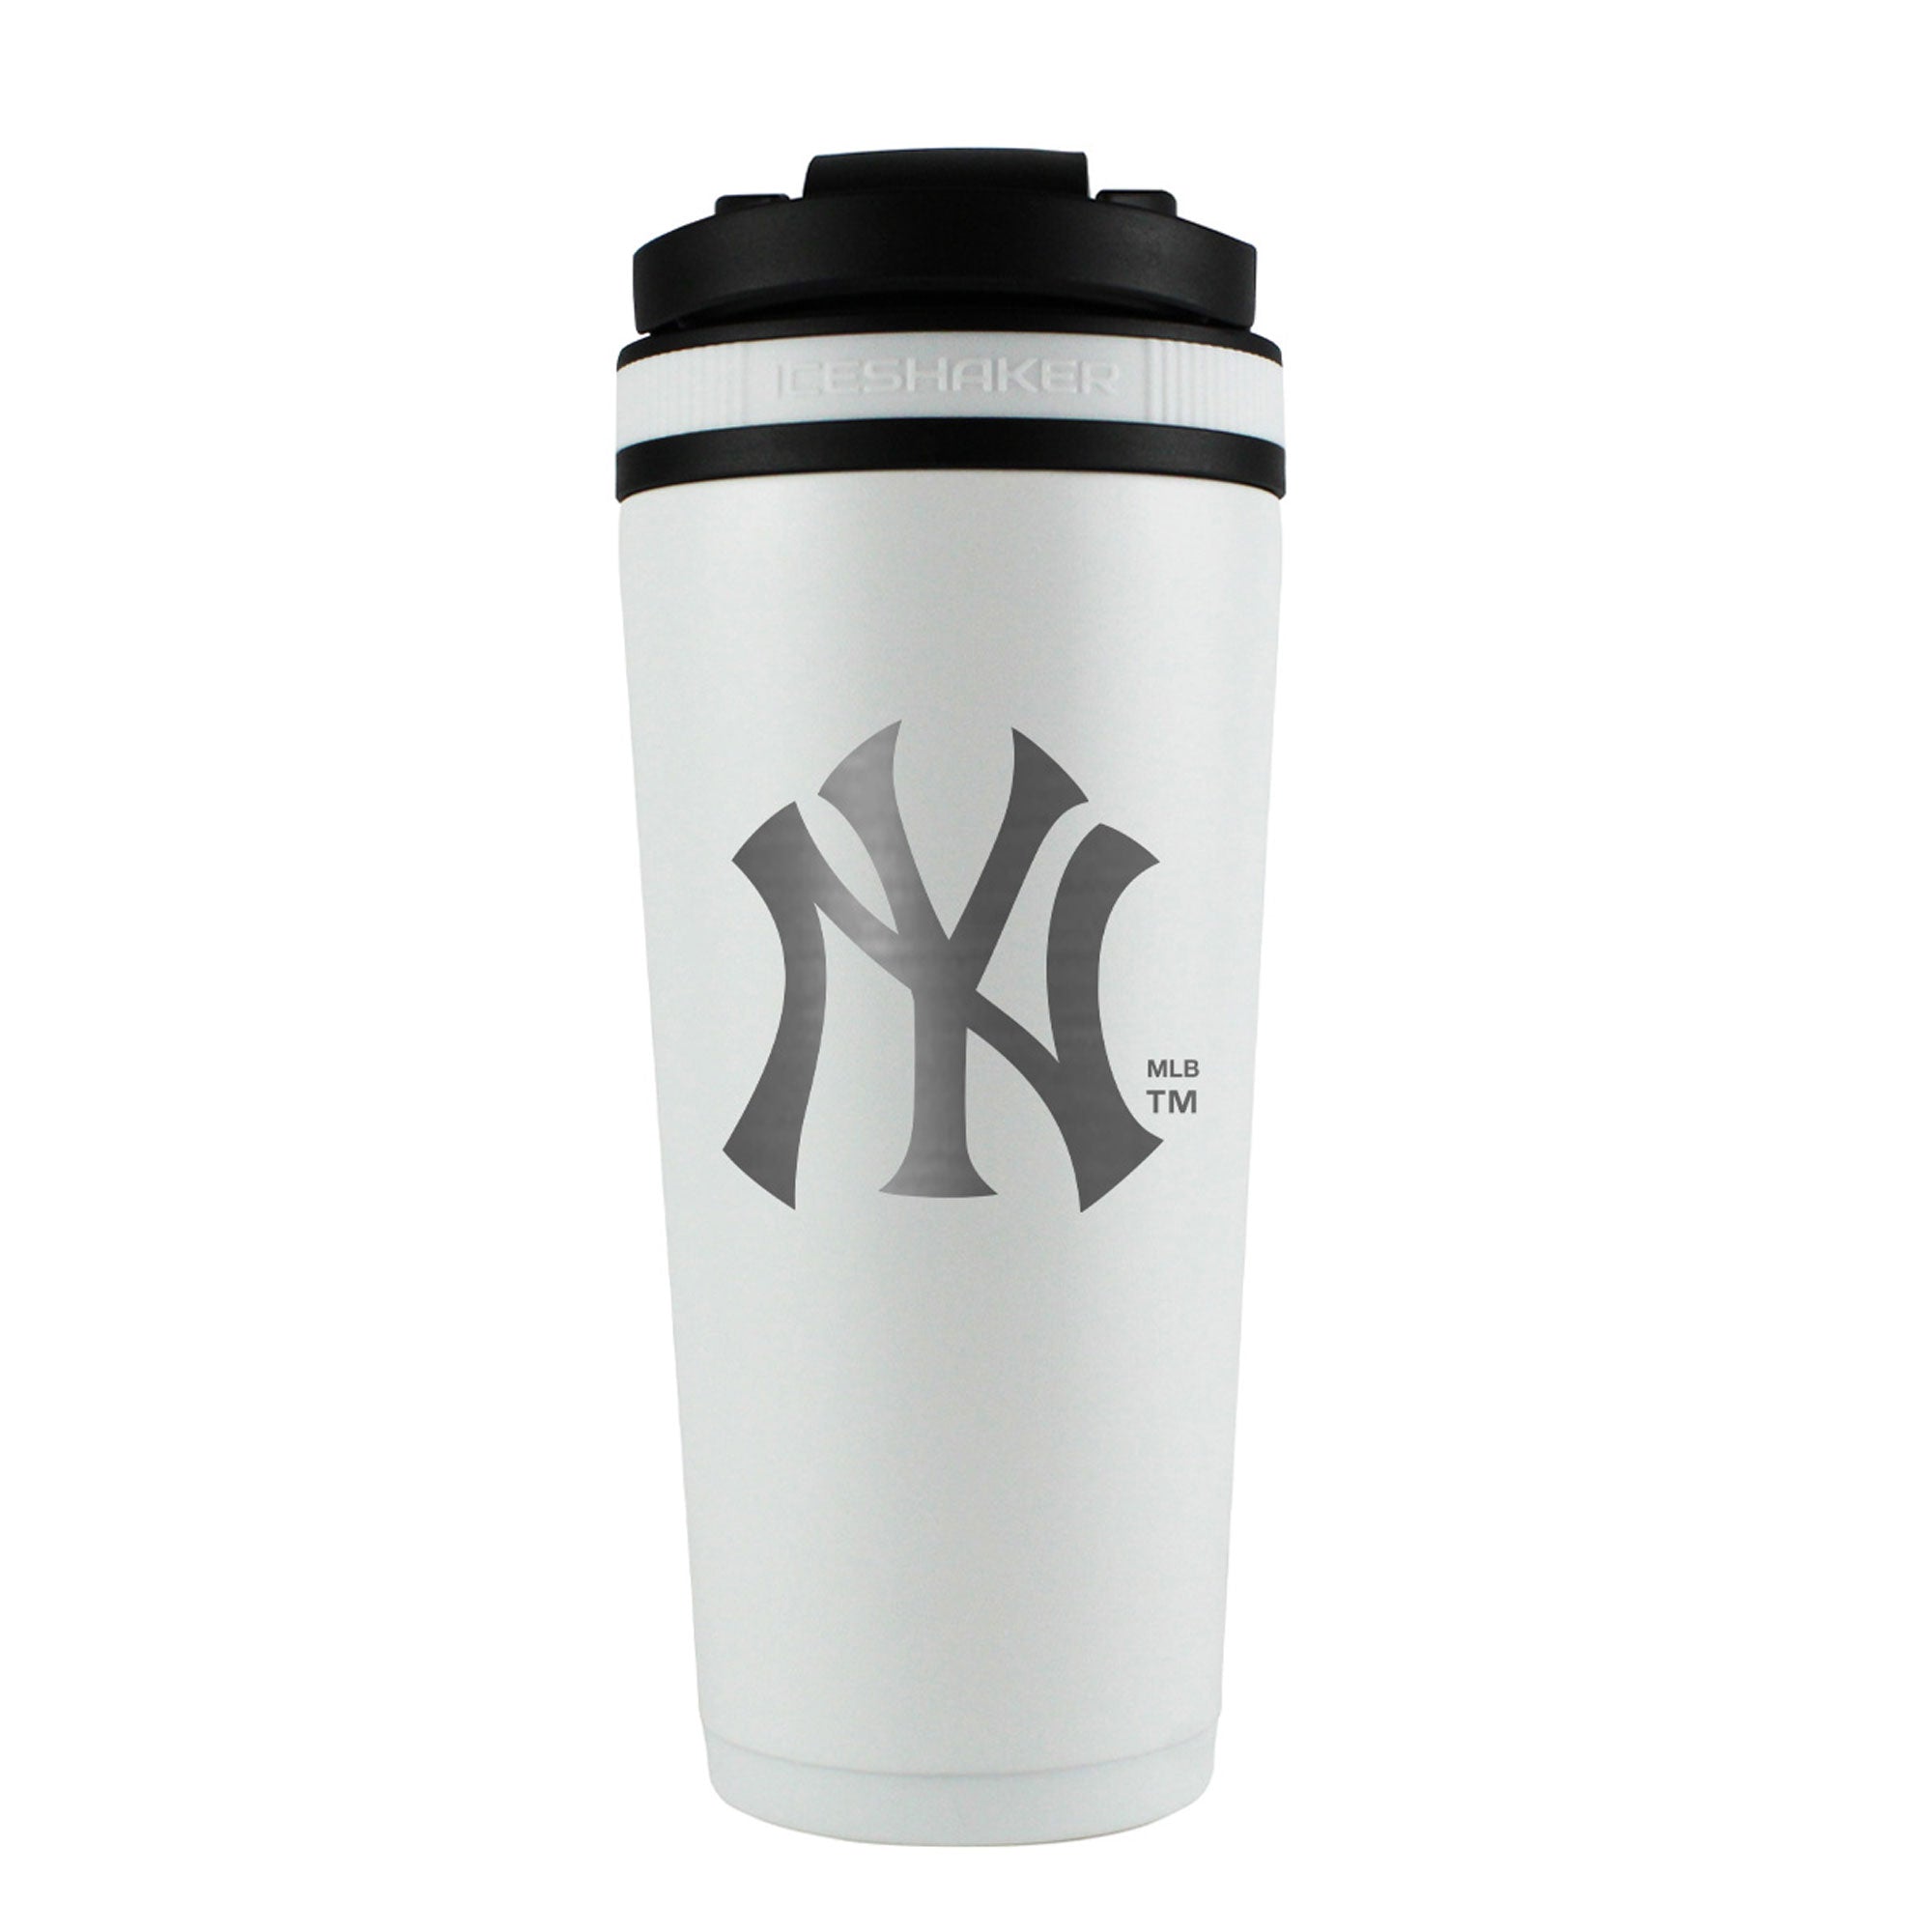 Officially Licensed New York Yankees 26oz Ice Shaker - White